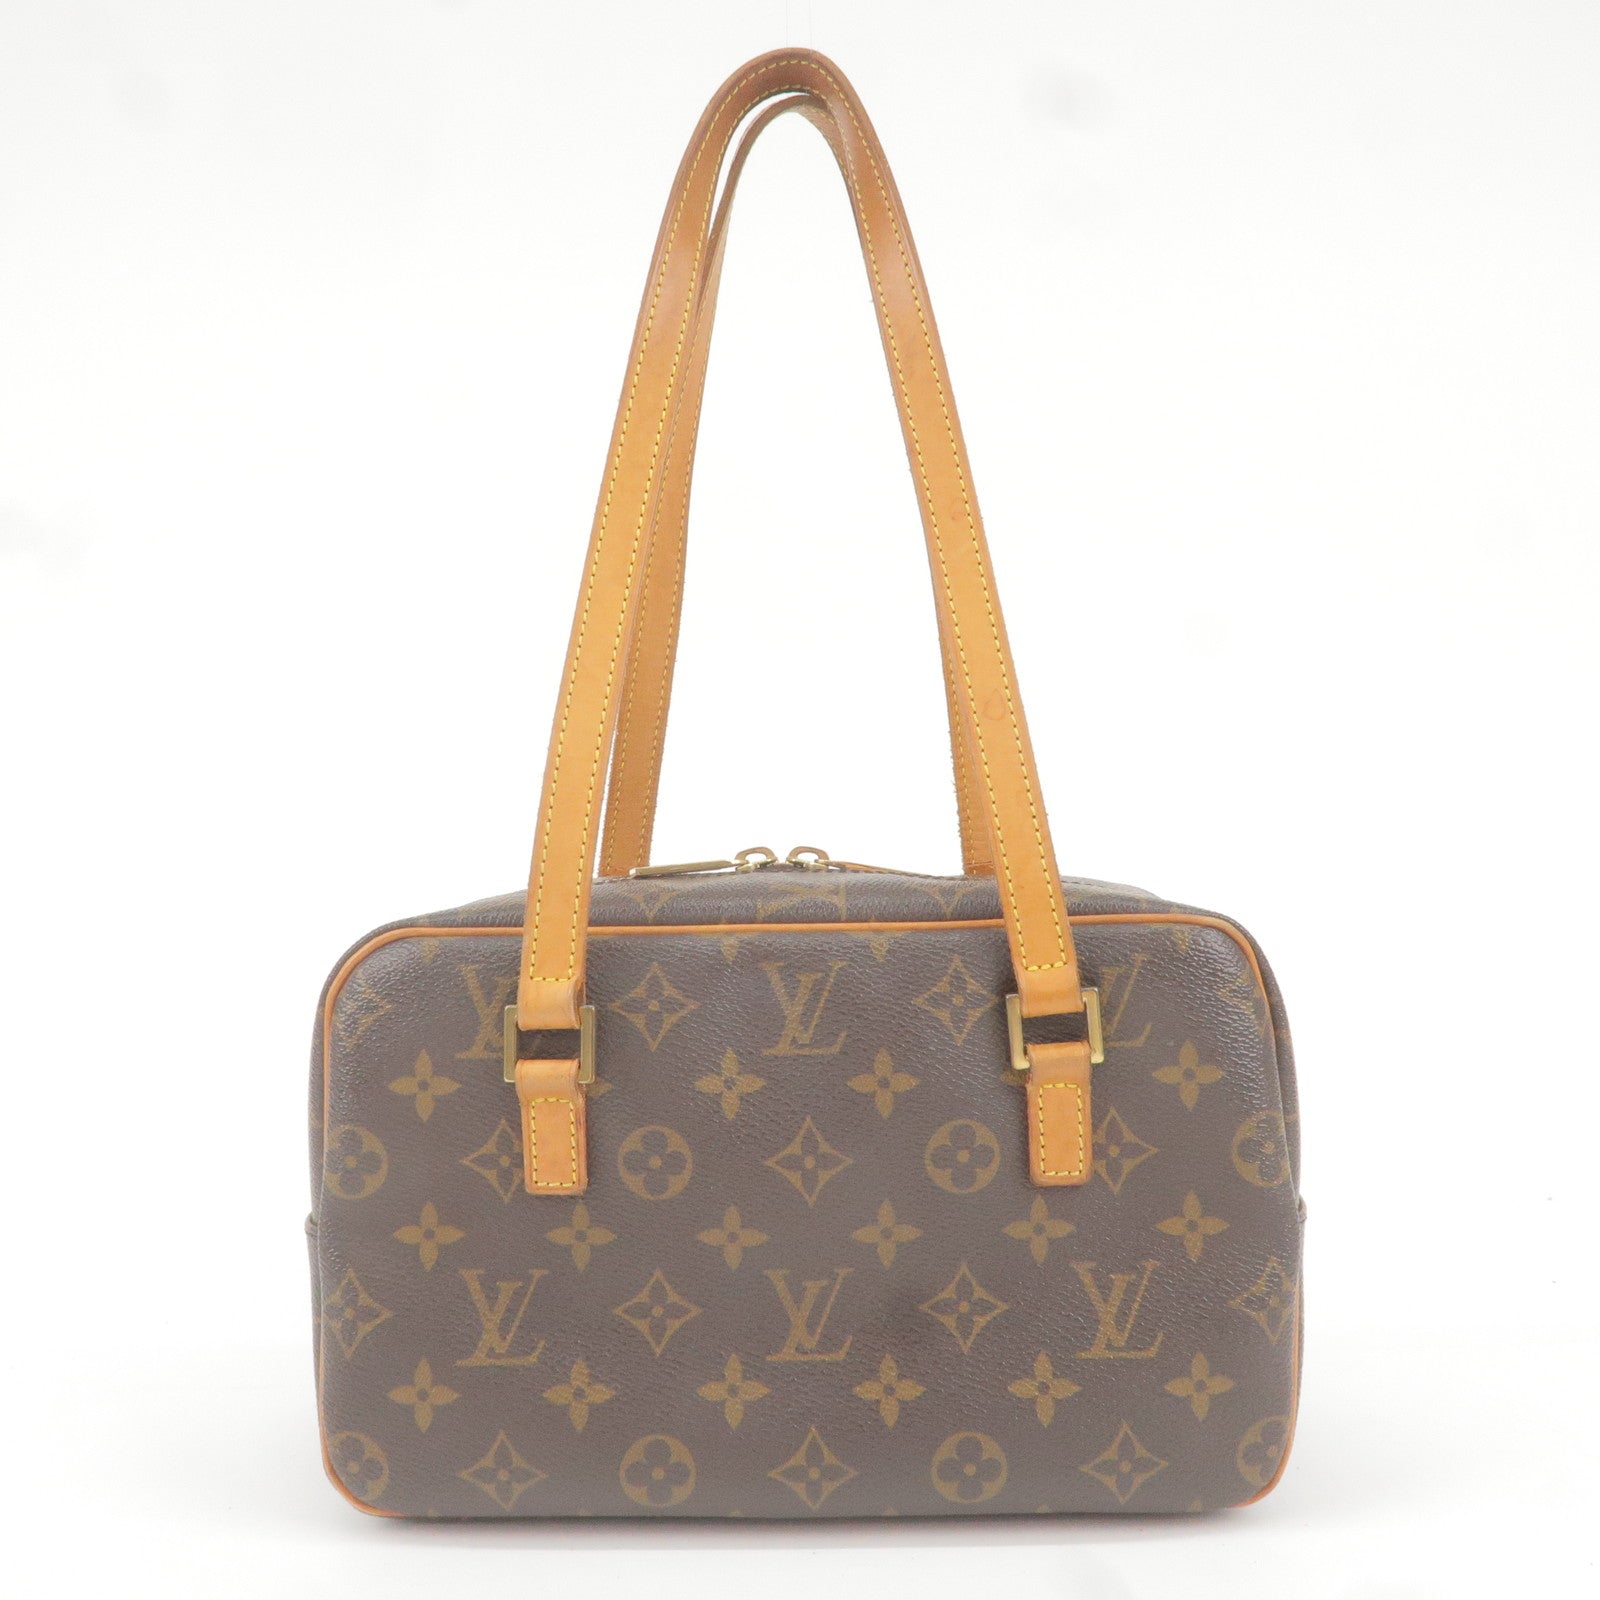 Unboxing Louis Vuitton damier ebene mini papillon bag it's so cute gorgeous  designer handbag 